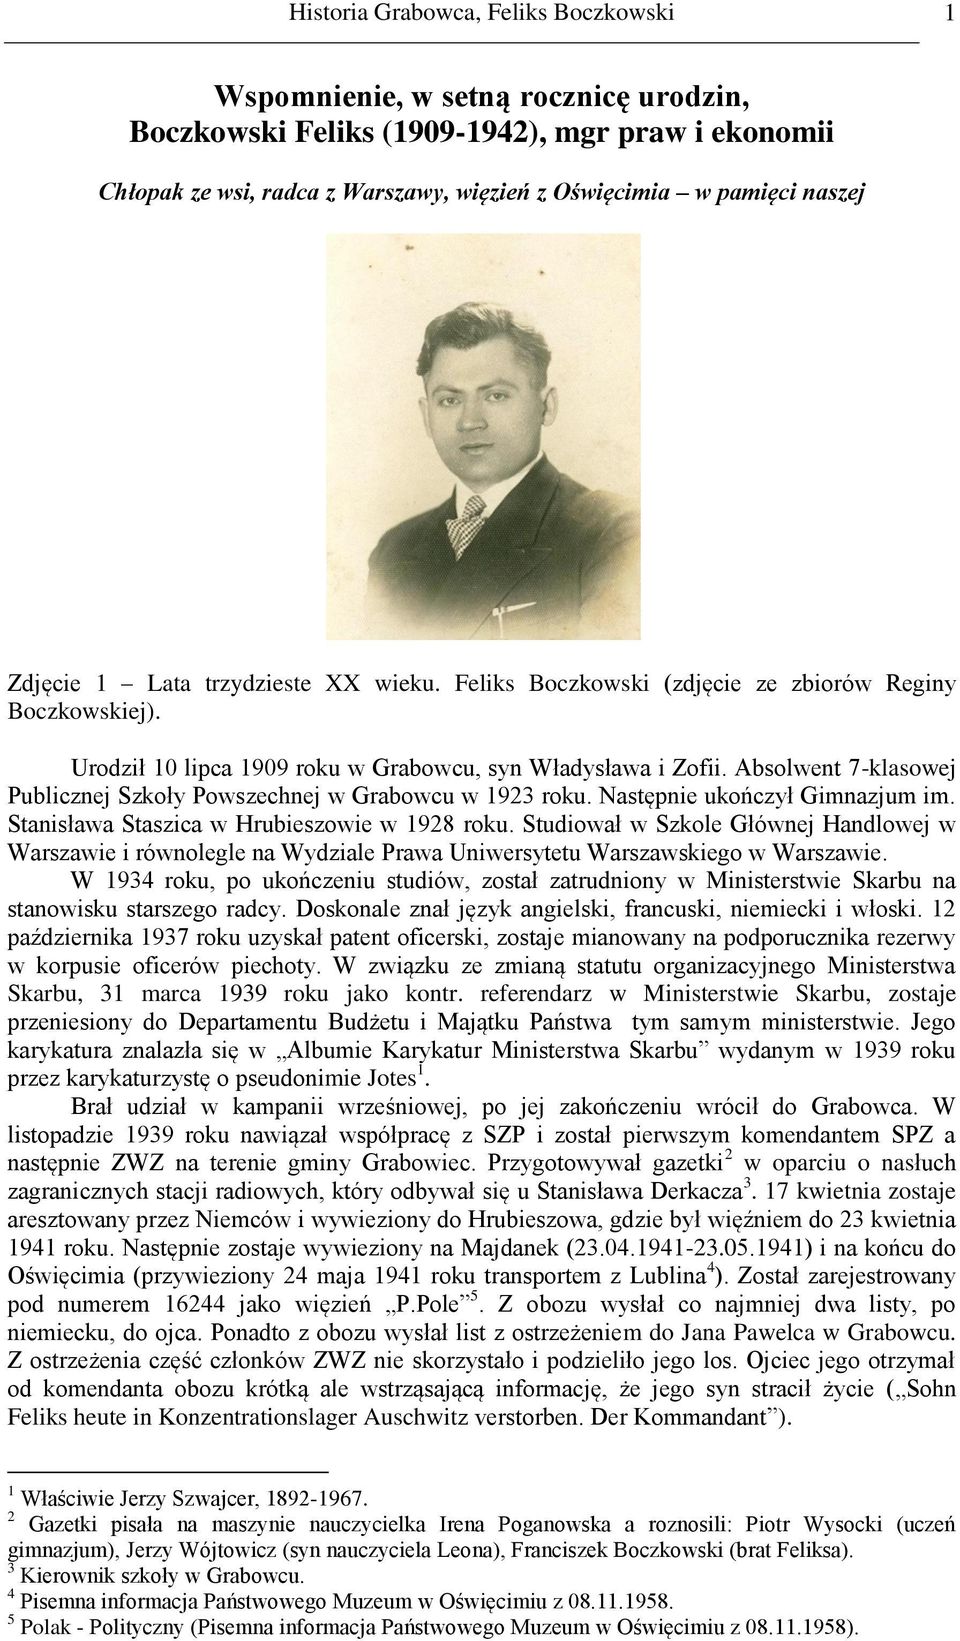 Absolwent 7-klasowej Publicznej Szkoły Powszechnej w Grabowcu w 1923 roku. Następnie ukończył Gimnazjum im. Stanisława Staszica w Hrubieszowie w 1928 roku.